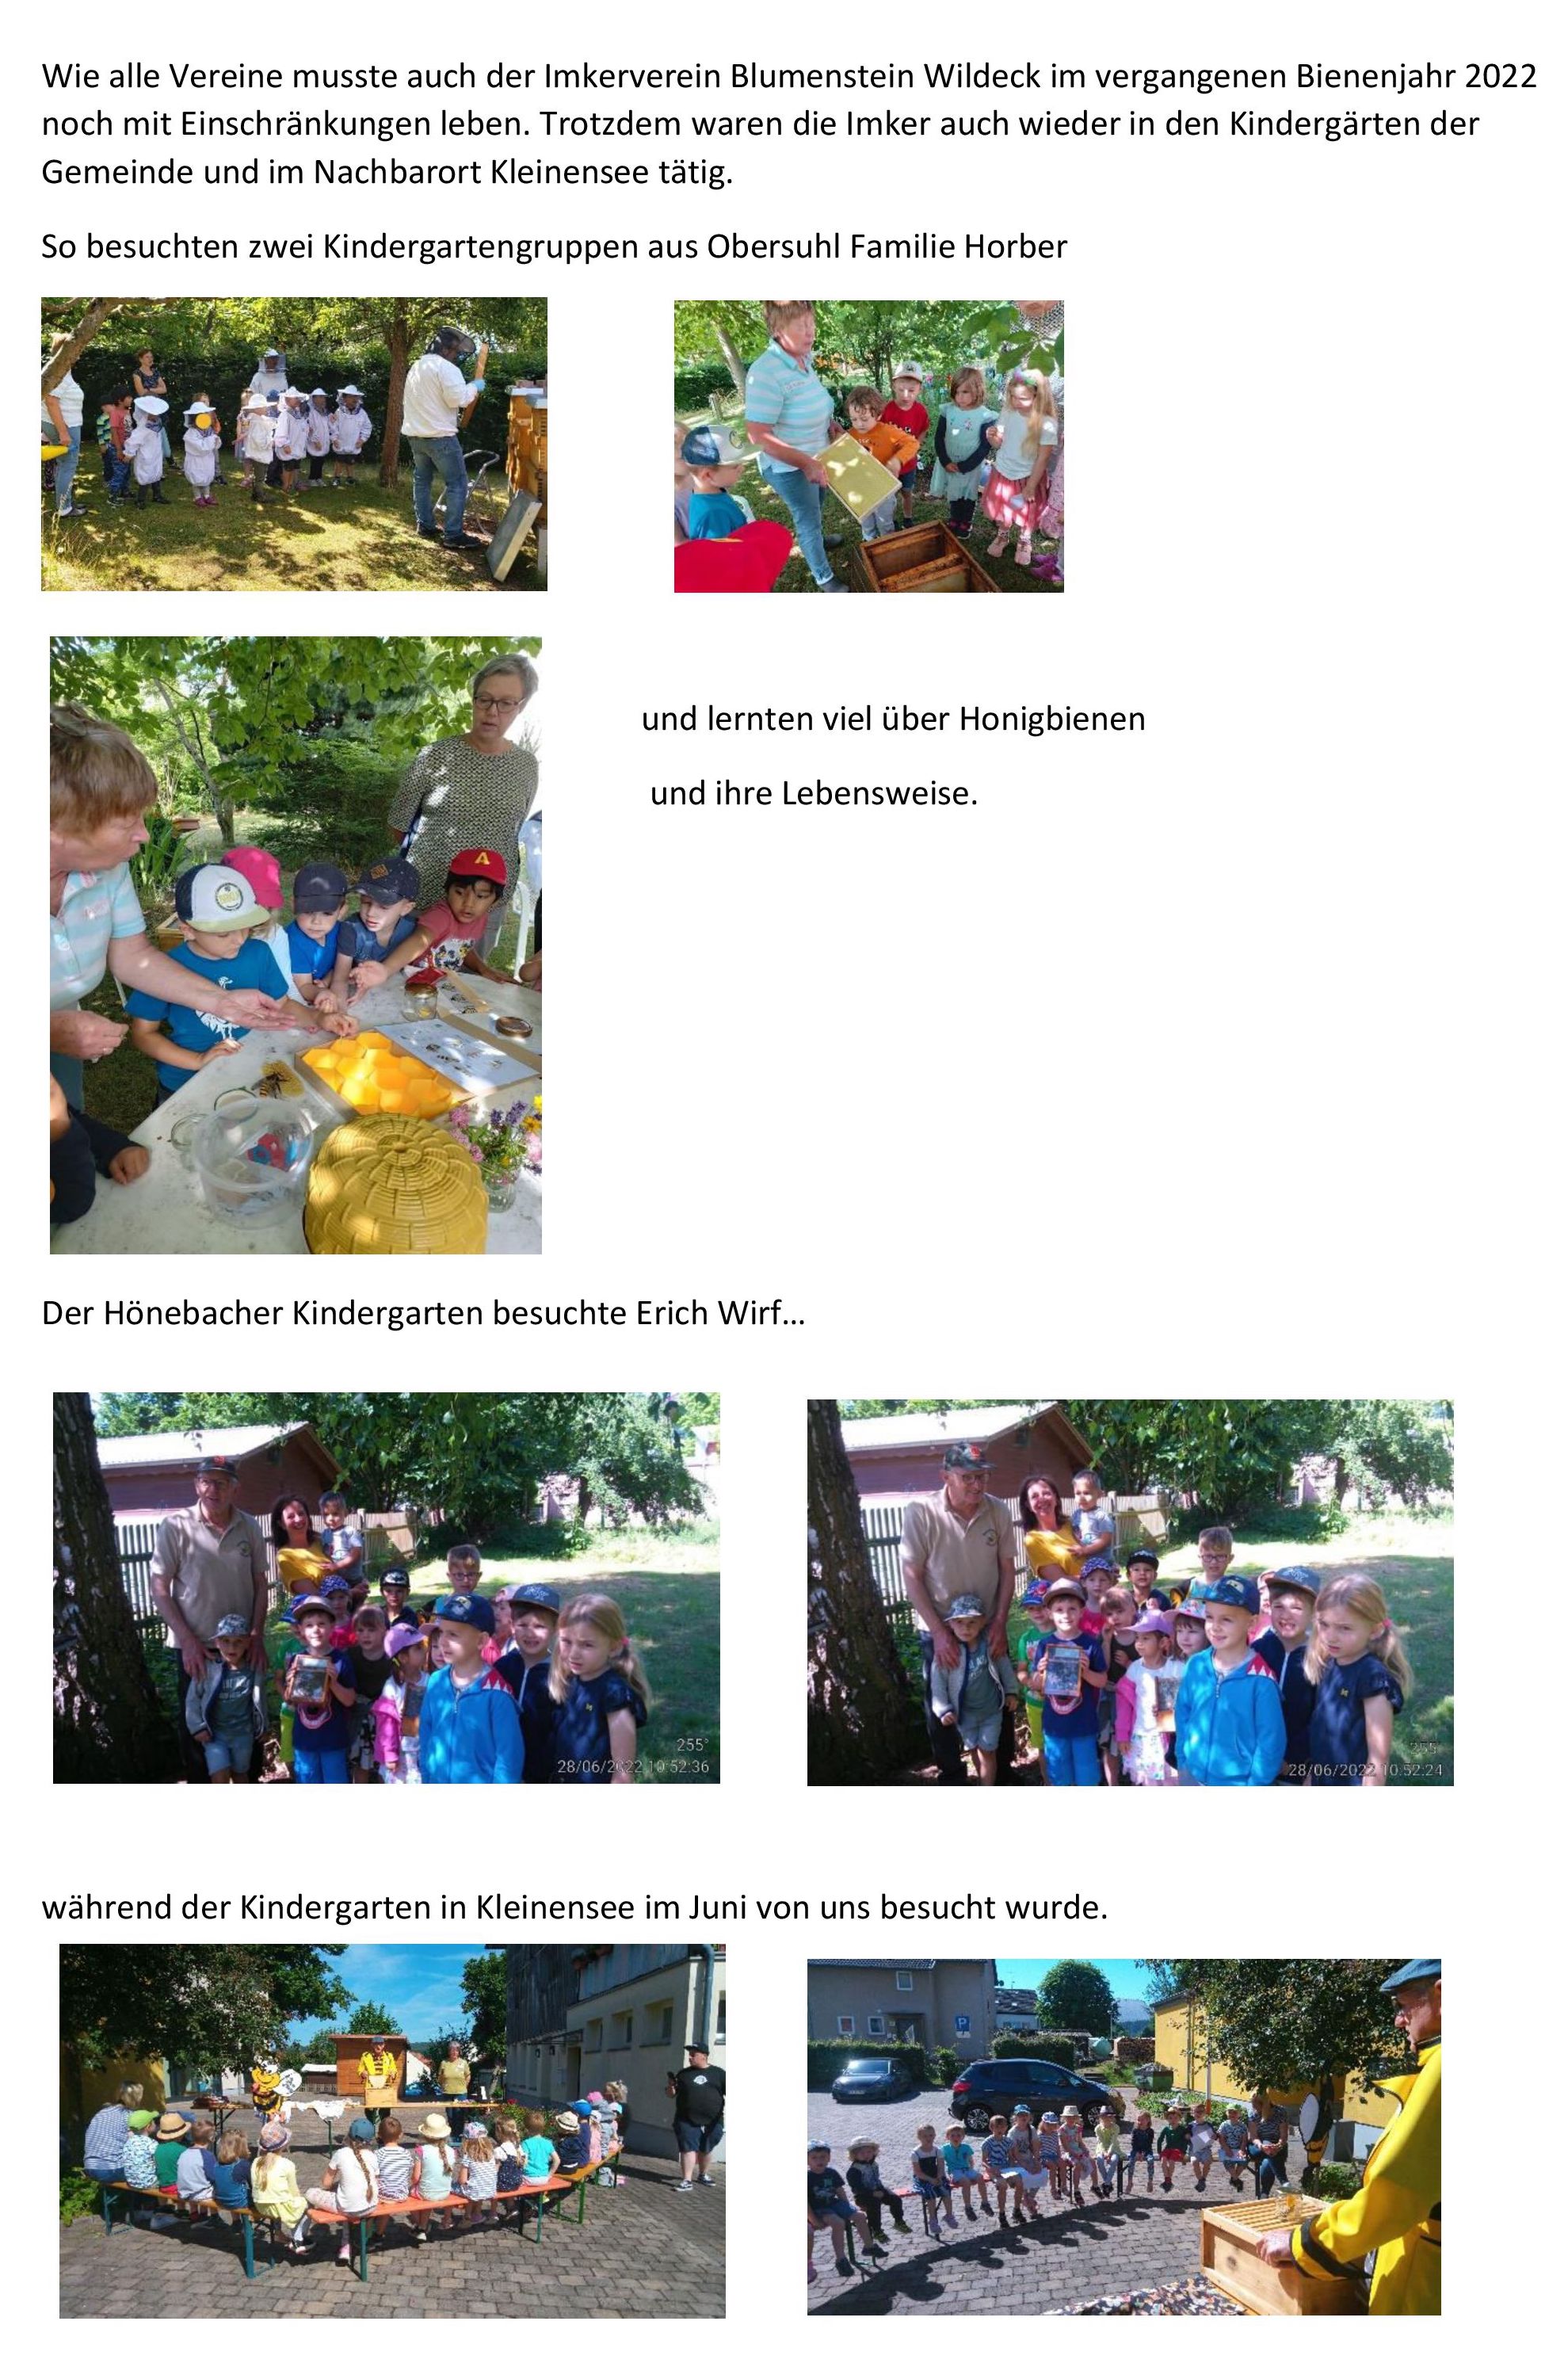 Im abgelaufenen Bienenjahr 2022 waren die Imker des Imkervereins Blumenstein Wildeck auch wieder in den Kindergarten der Gemeinde und im Nachbarort Kleinensee tatig 1